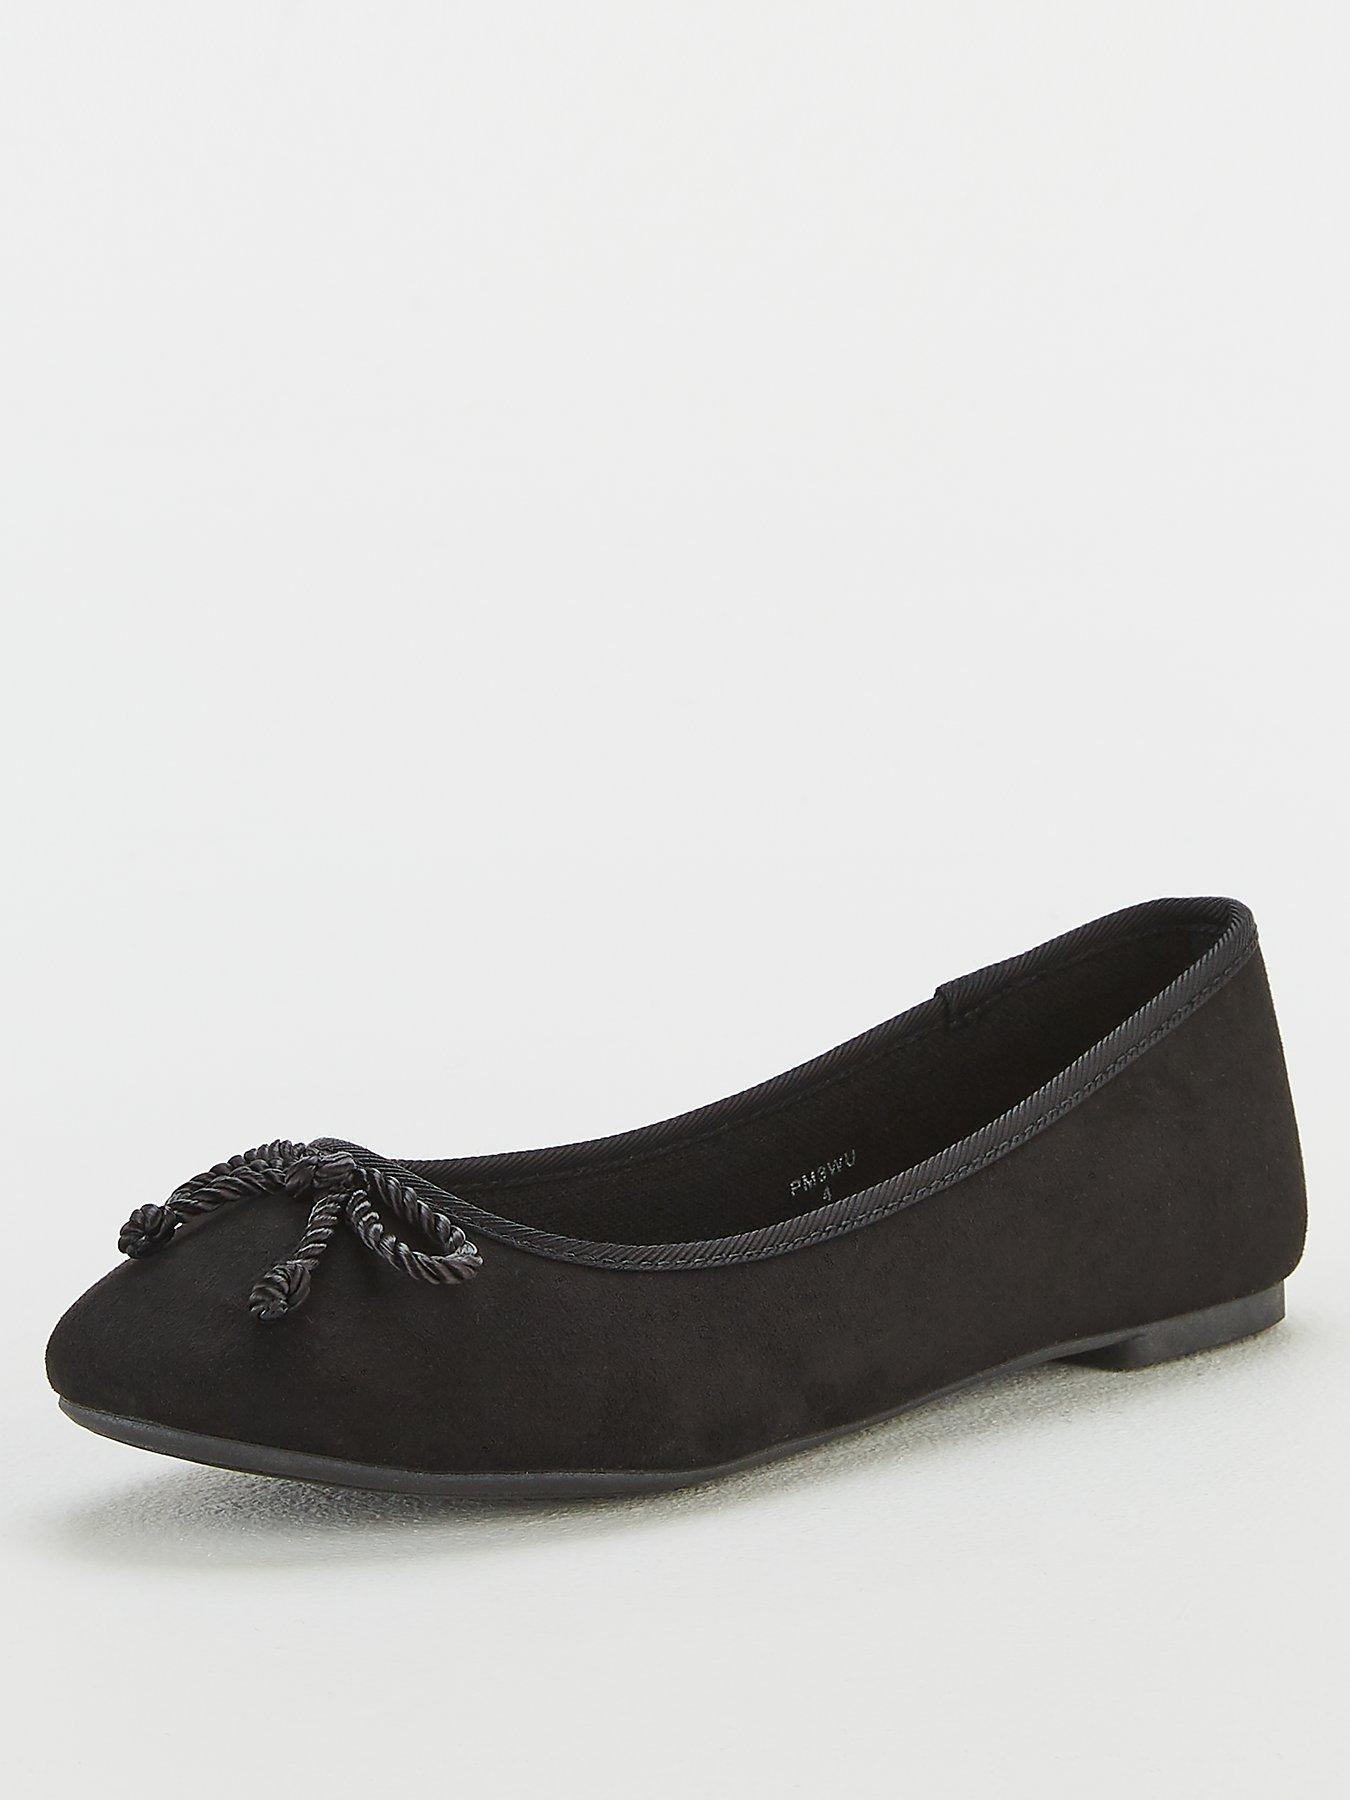 Women's Shoes \u0026 Boots | Online Shopping 